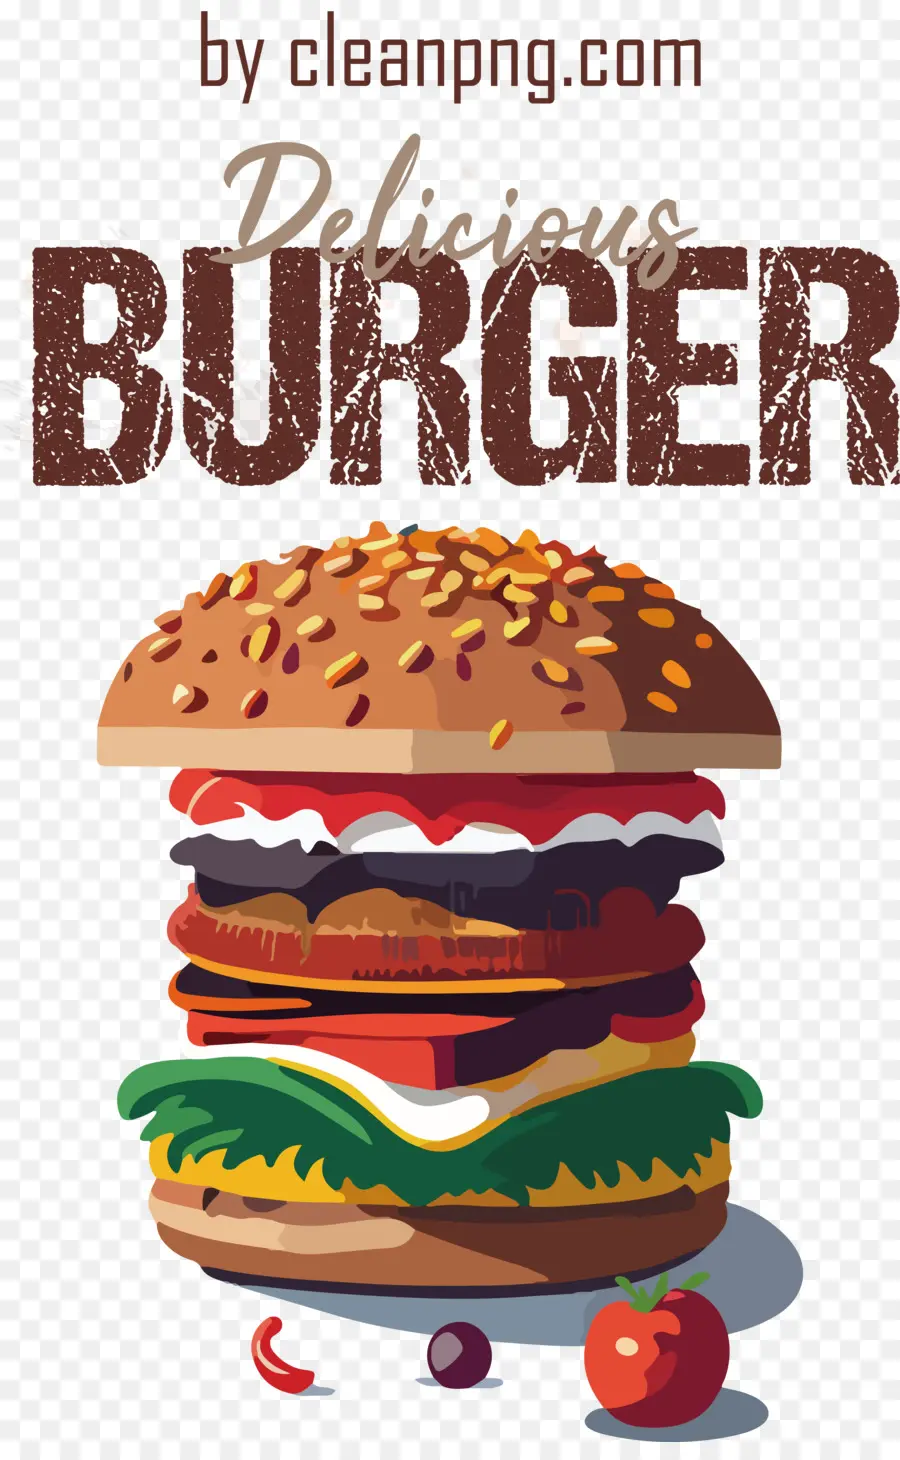 Köstliche Burger World Burger Day Fast Food - 